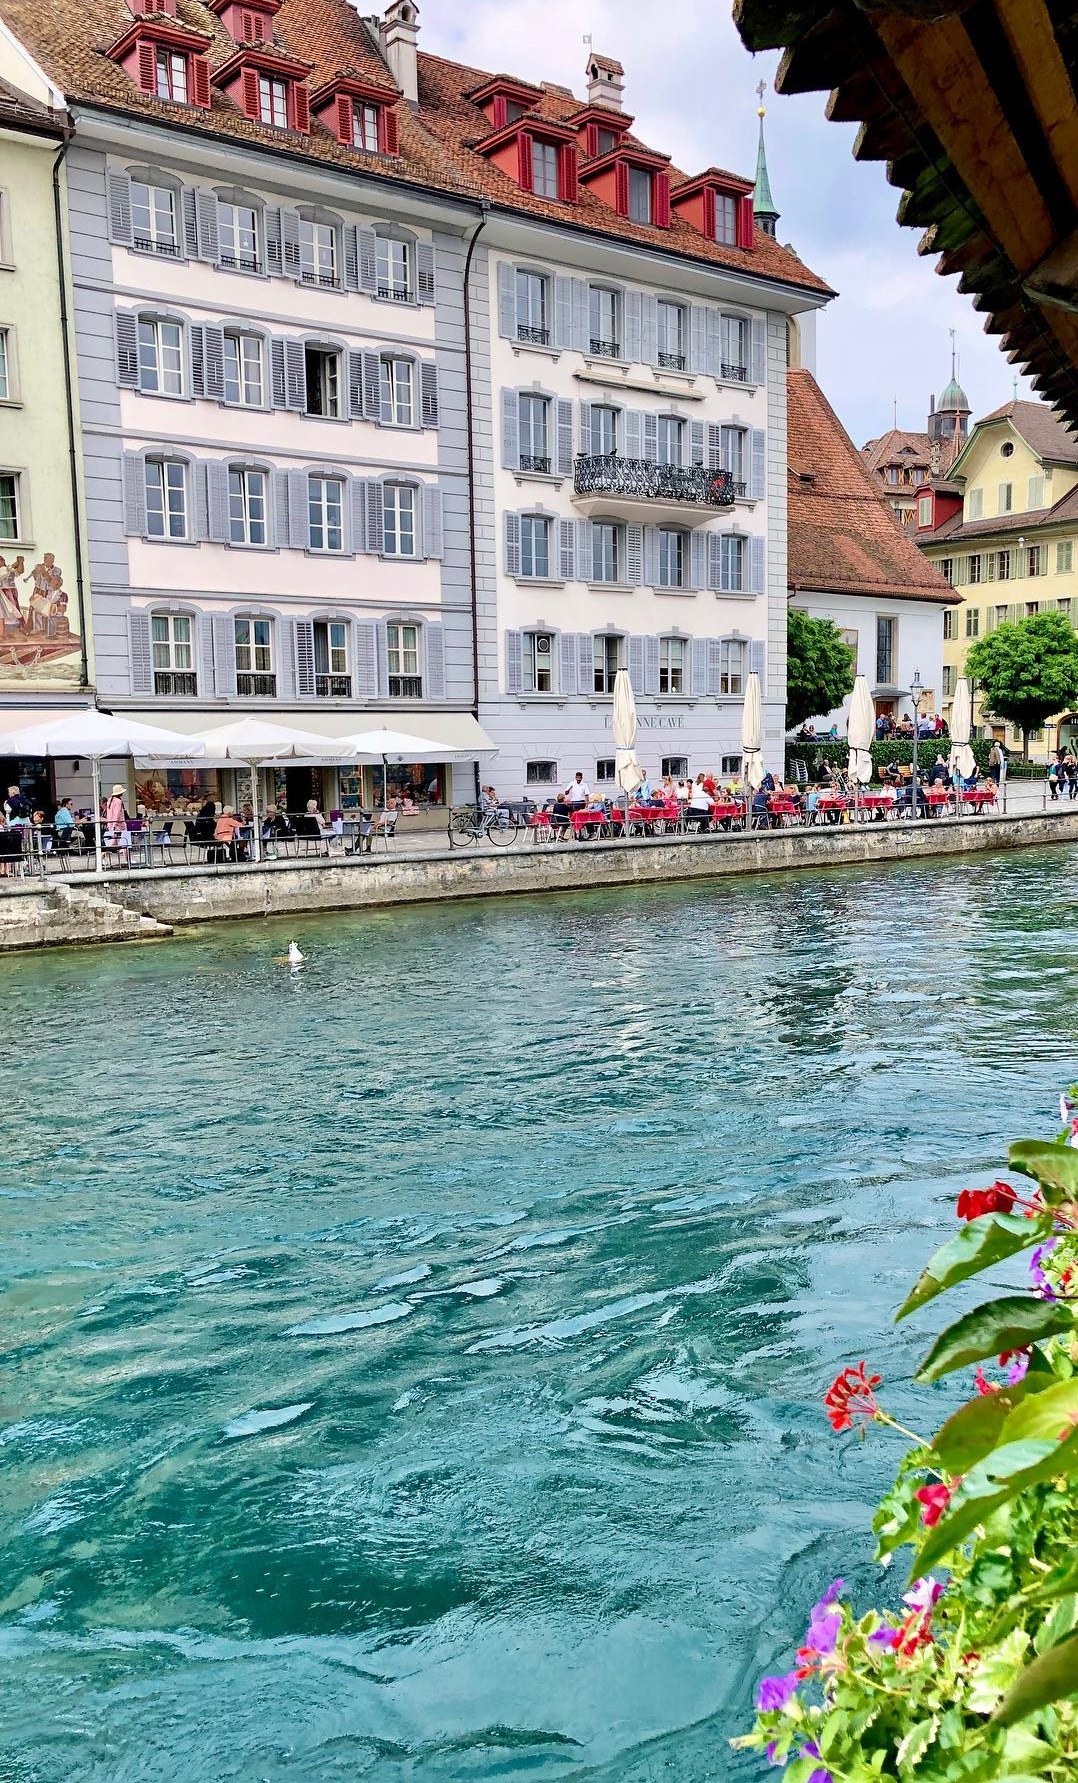 Lucerne, Switzerland - Best Lake side wedding destinations